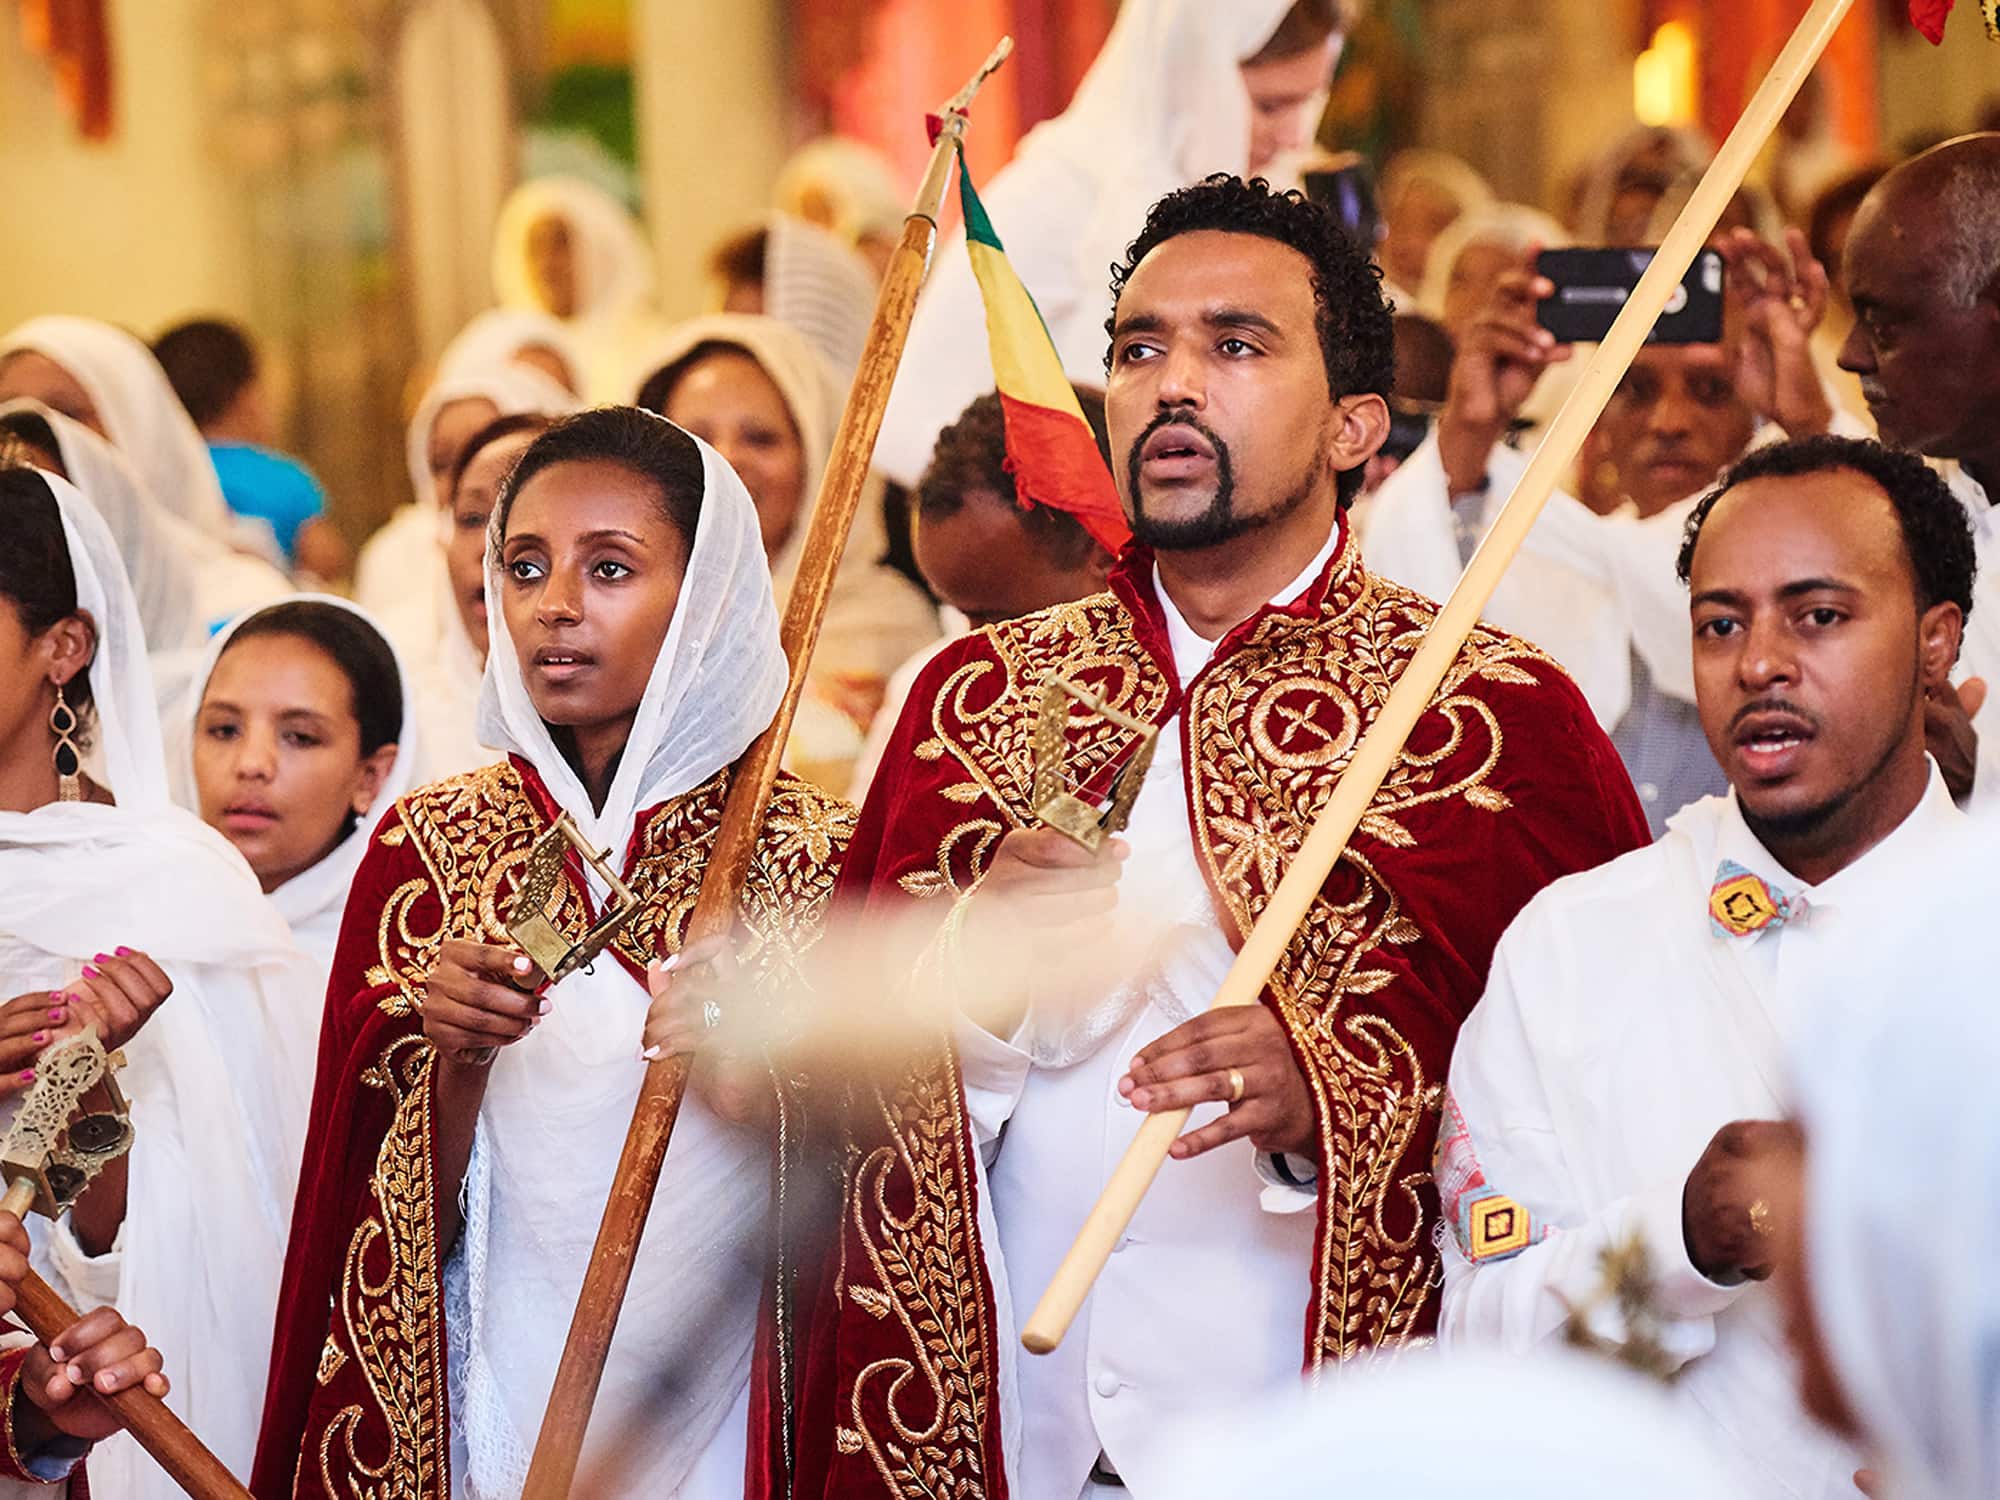 ethiopian weddings amhara traditional wedding